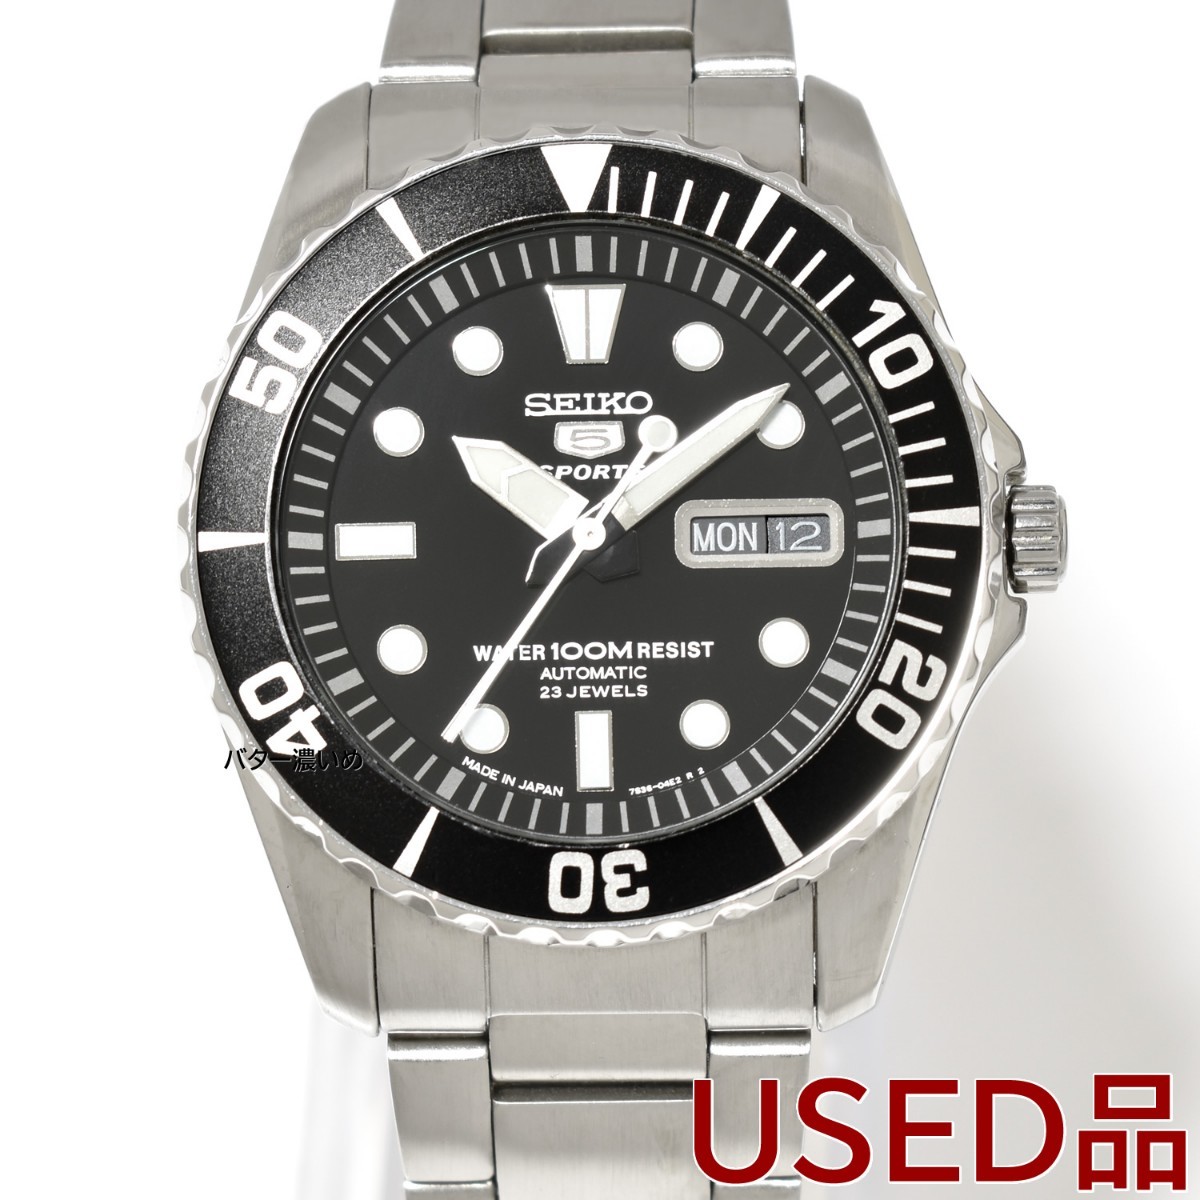 セイコー5 SEIKO メンズ 腕時計 自動巻き 交換用ベルト付き SNZF17J1 ダイバーズ セイコーファイブ 海外モデル 日本製 品 箱あり